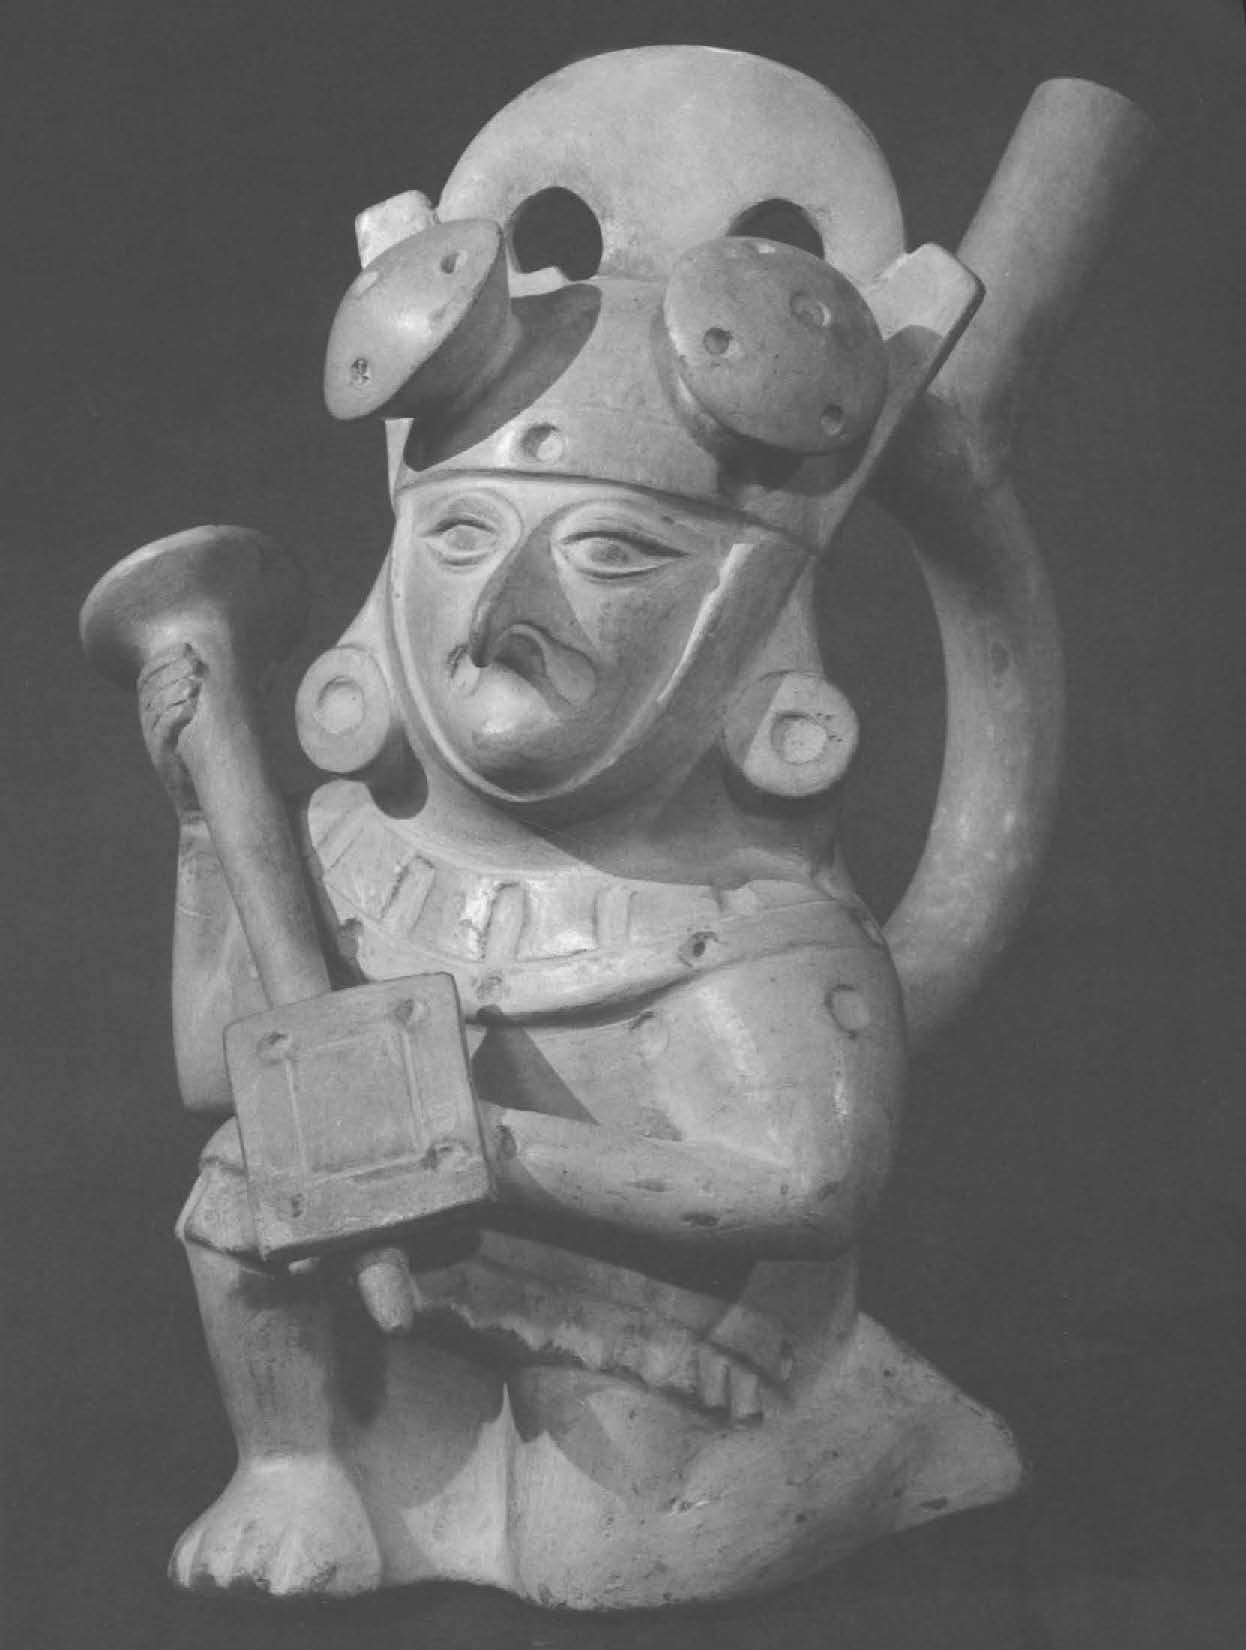 Ancient Peruvian Ceramics